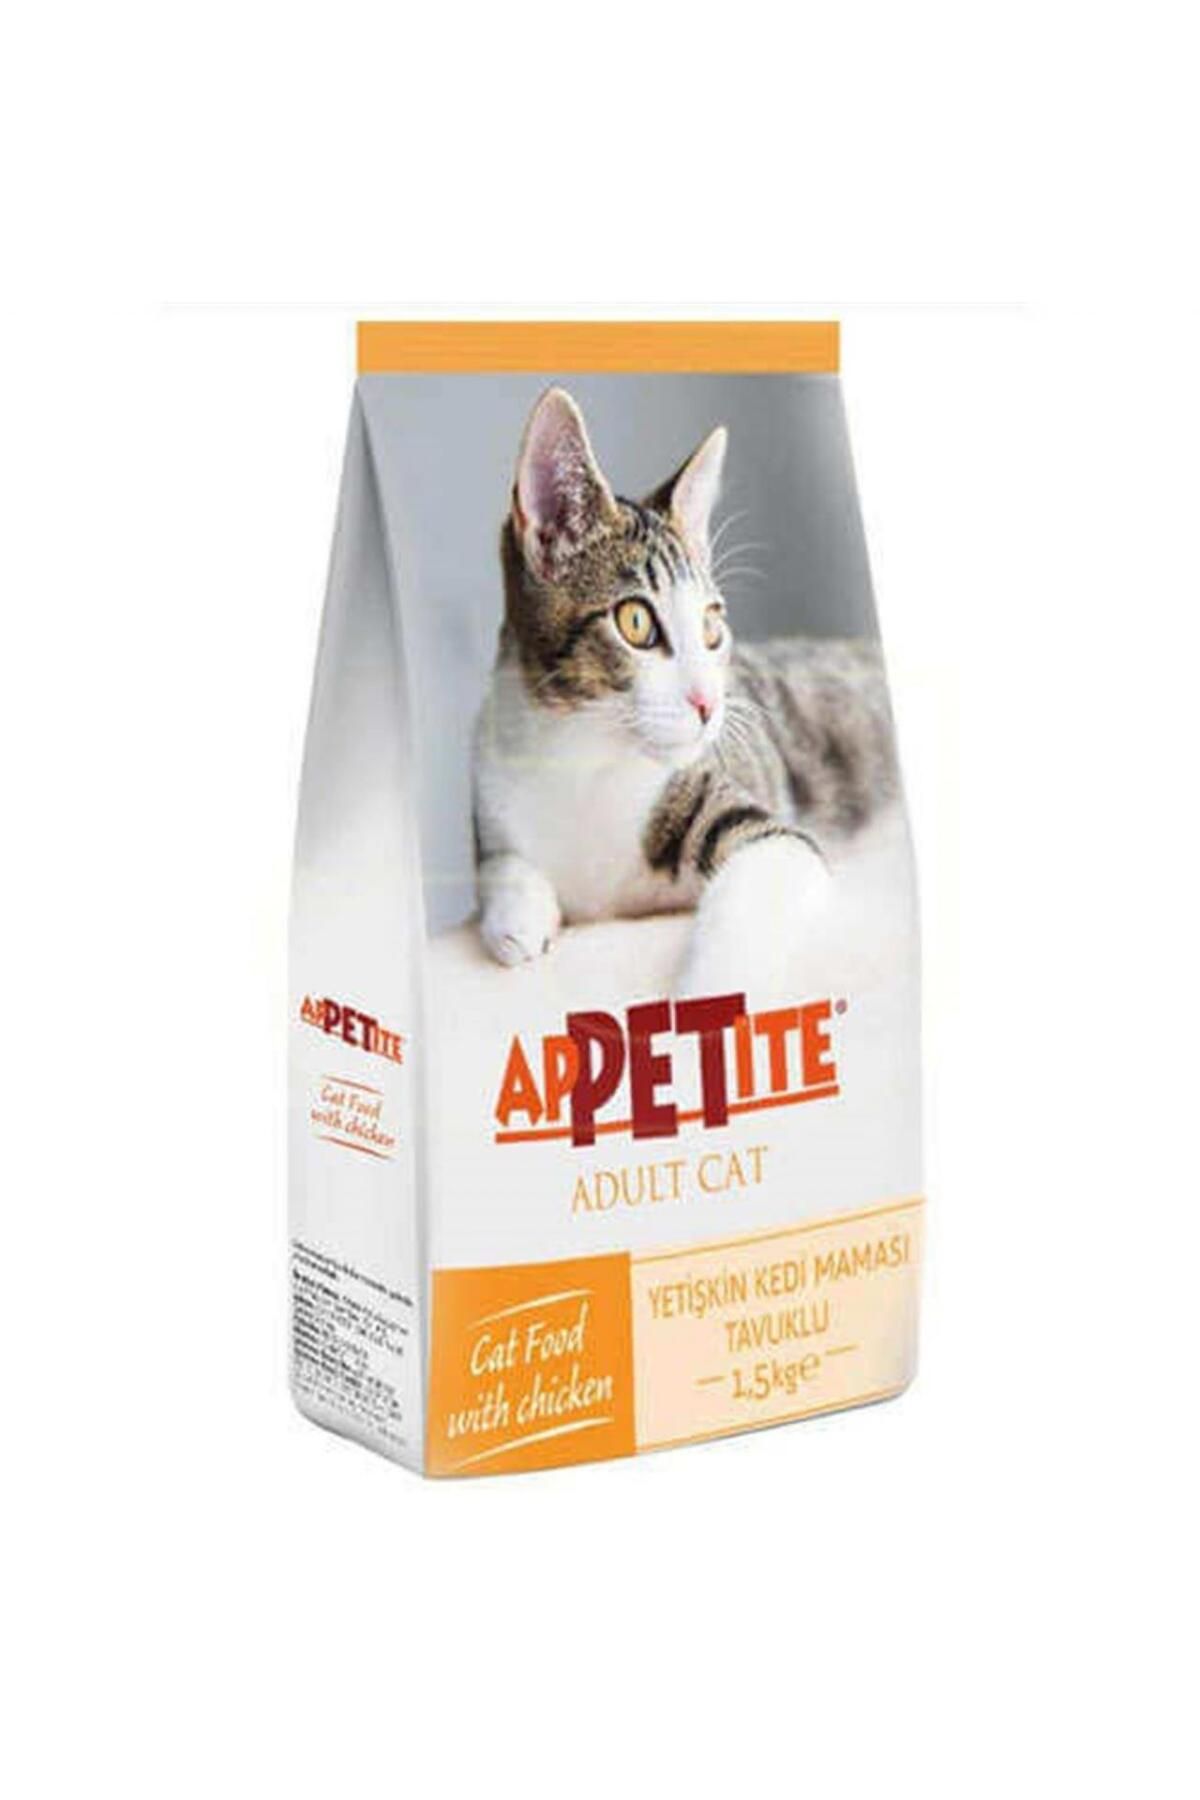 Appetite Yetişkin Tavuklu Kedi Maması 1,5 Kg